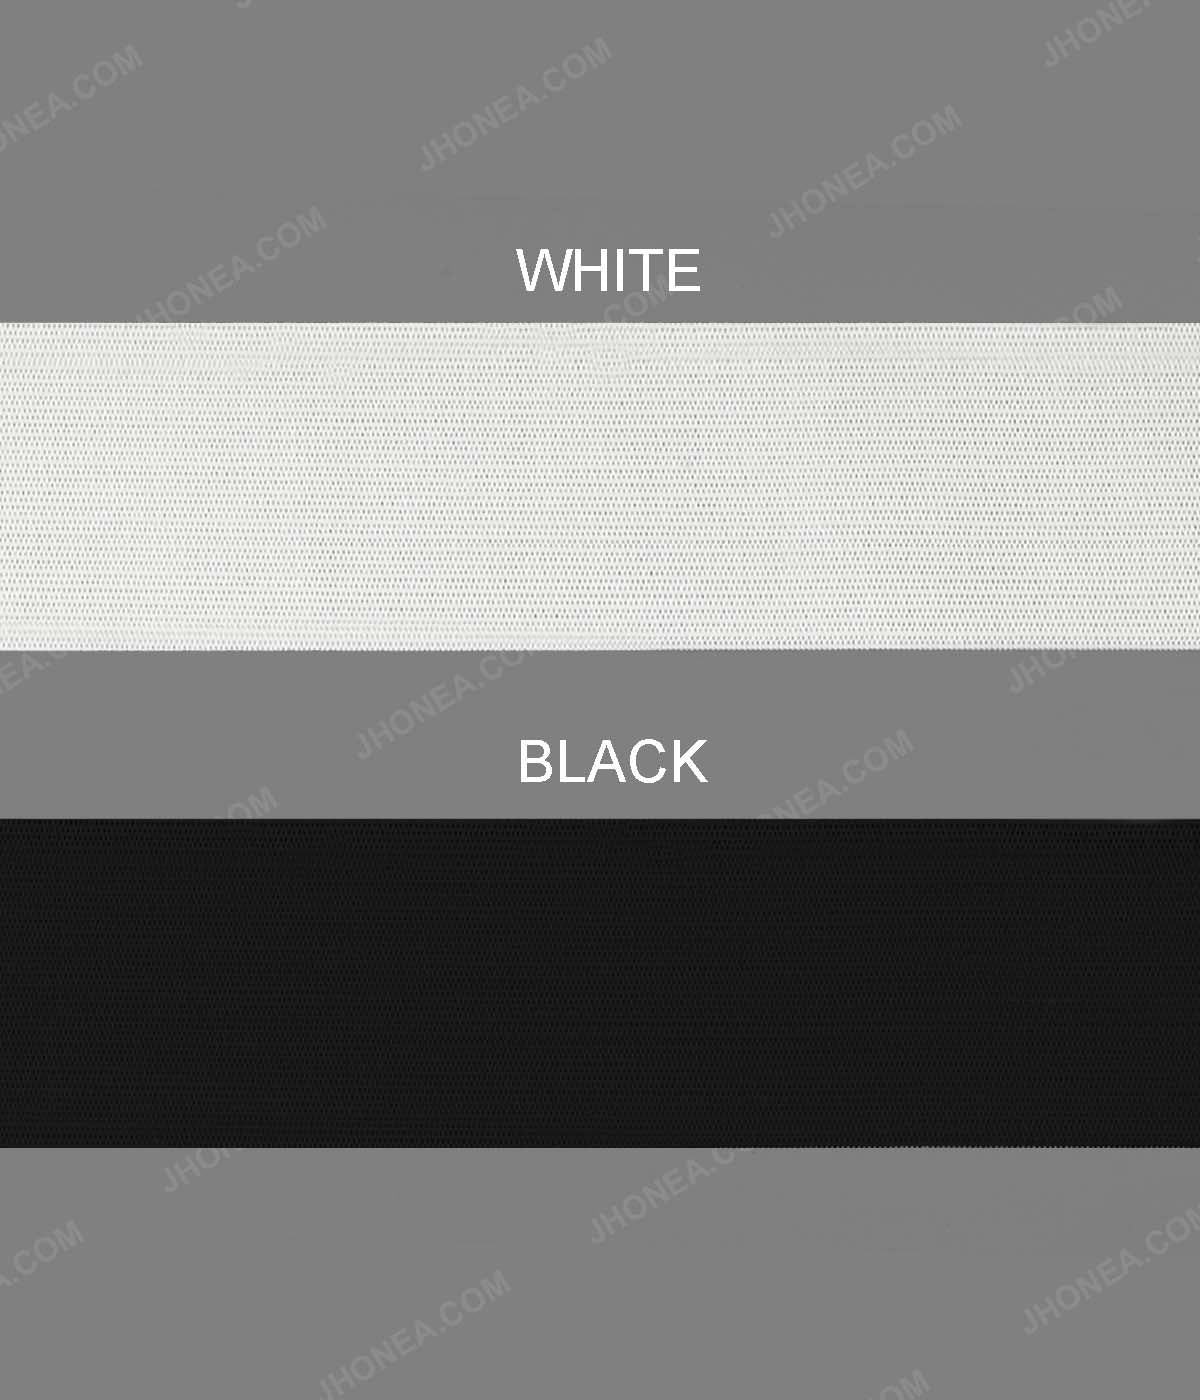 Plain Soft Black & White Tailors' Knitted Elastic for Casings